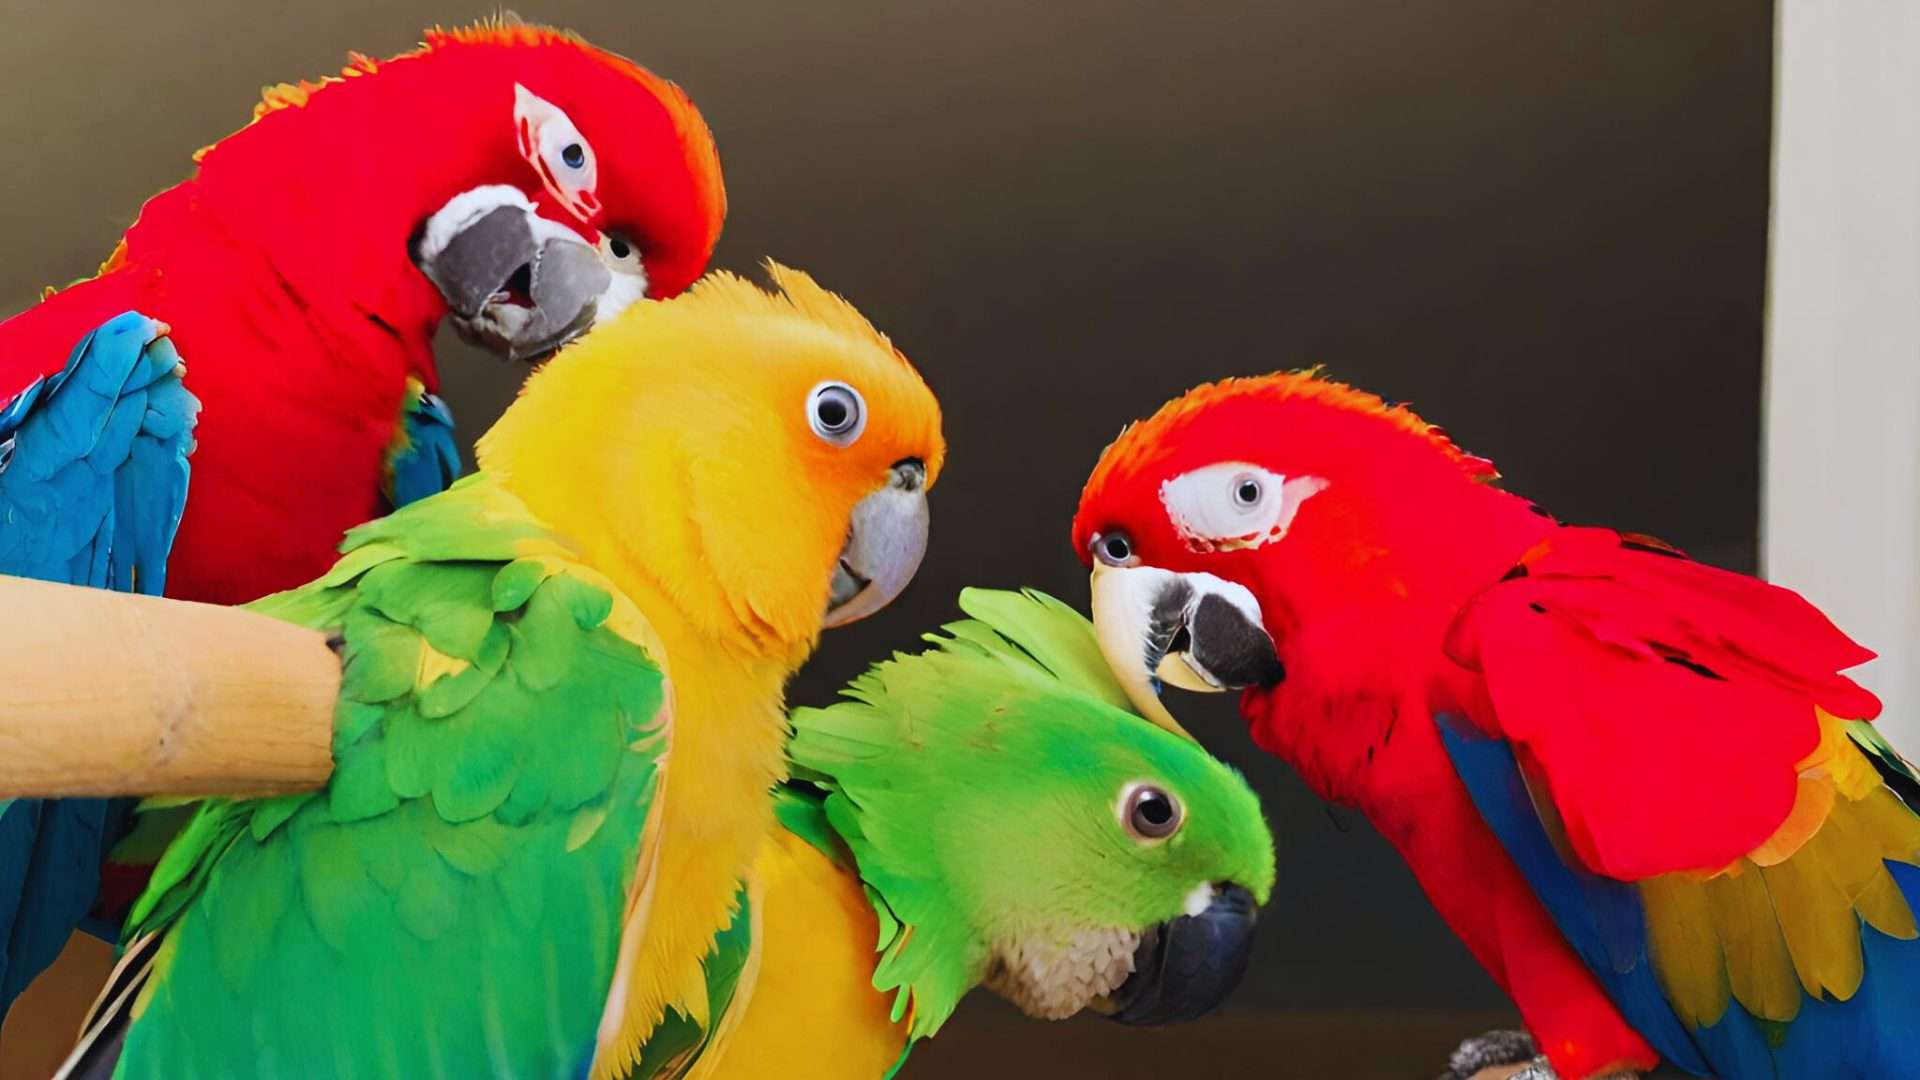 Can Parrots Understand Their Own Speech?